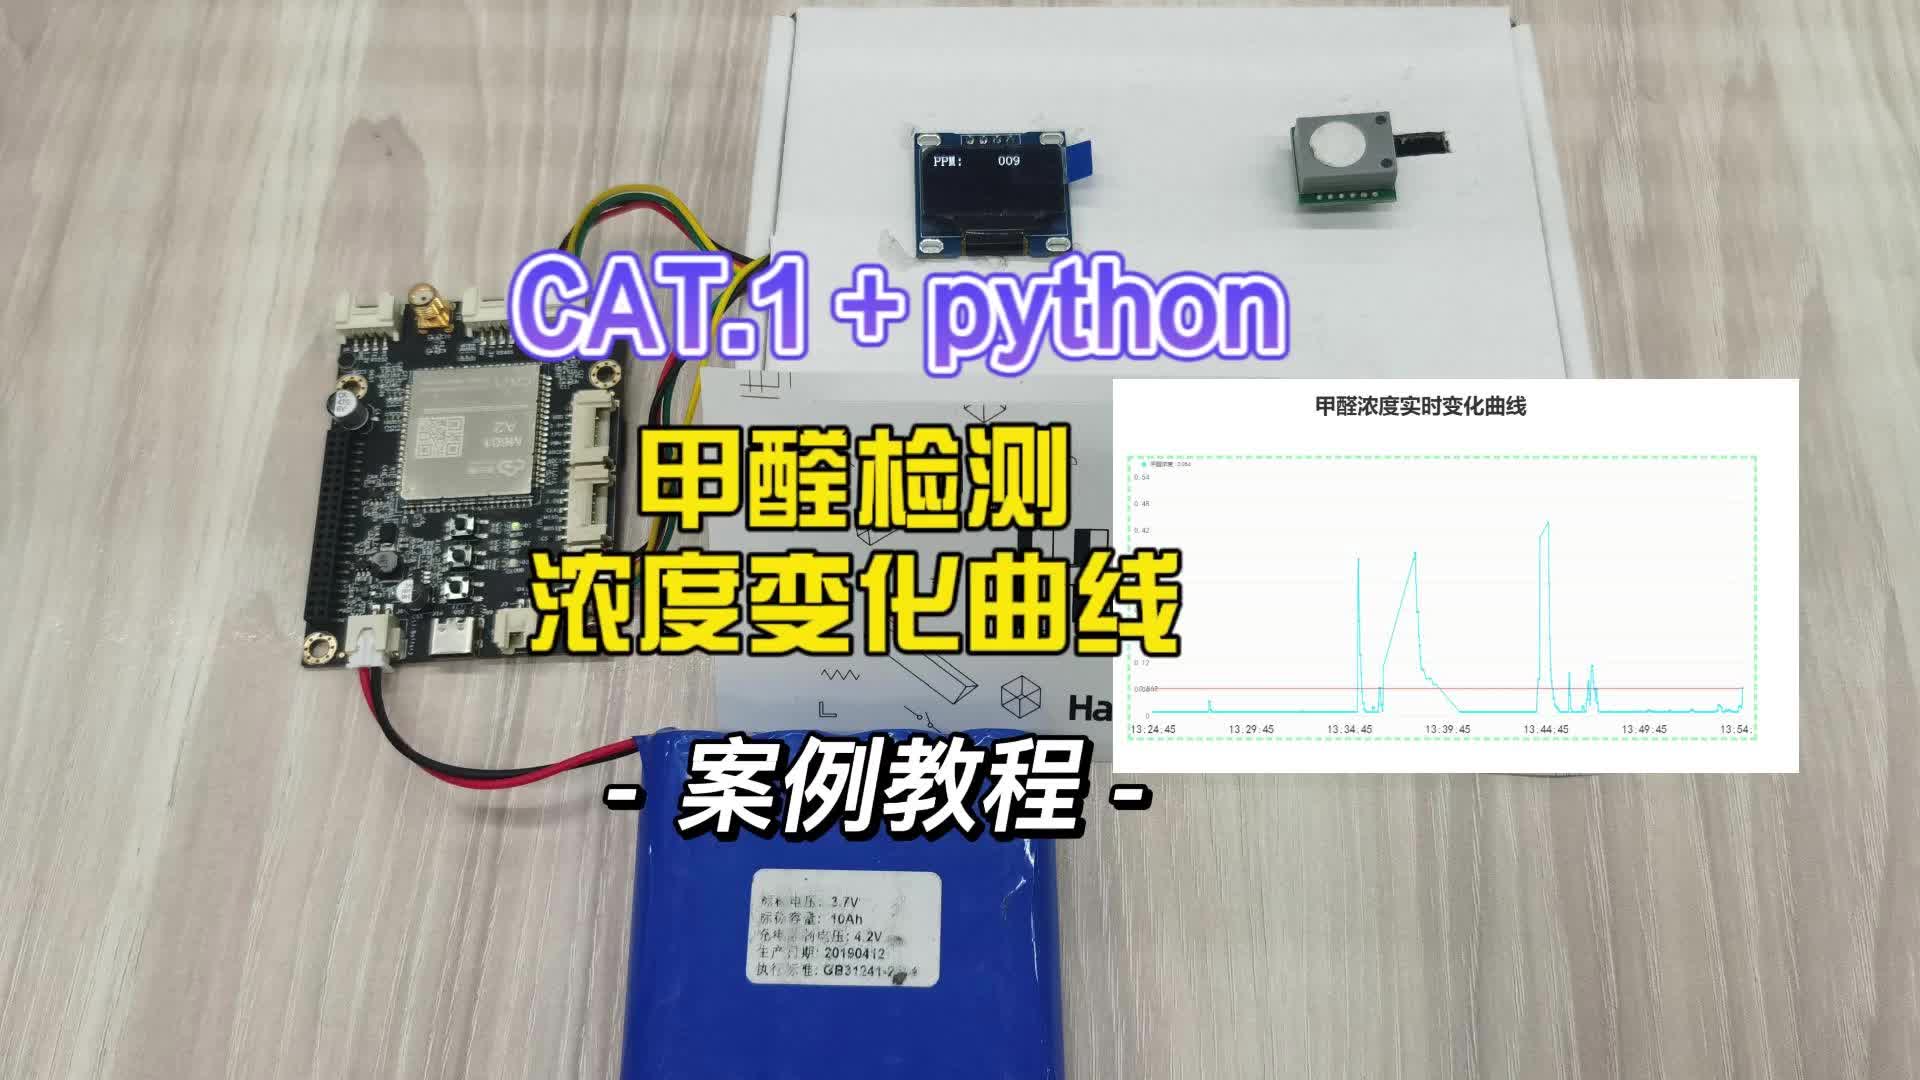 用python写的甲醛检测仪，附教程源码，帮我看看有什么可优化的地方#python开发板 #cat1 